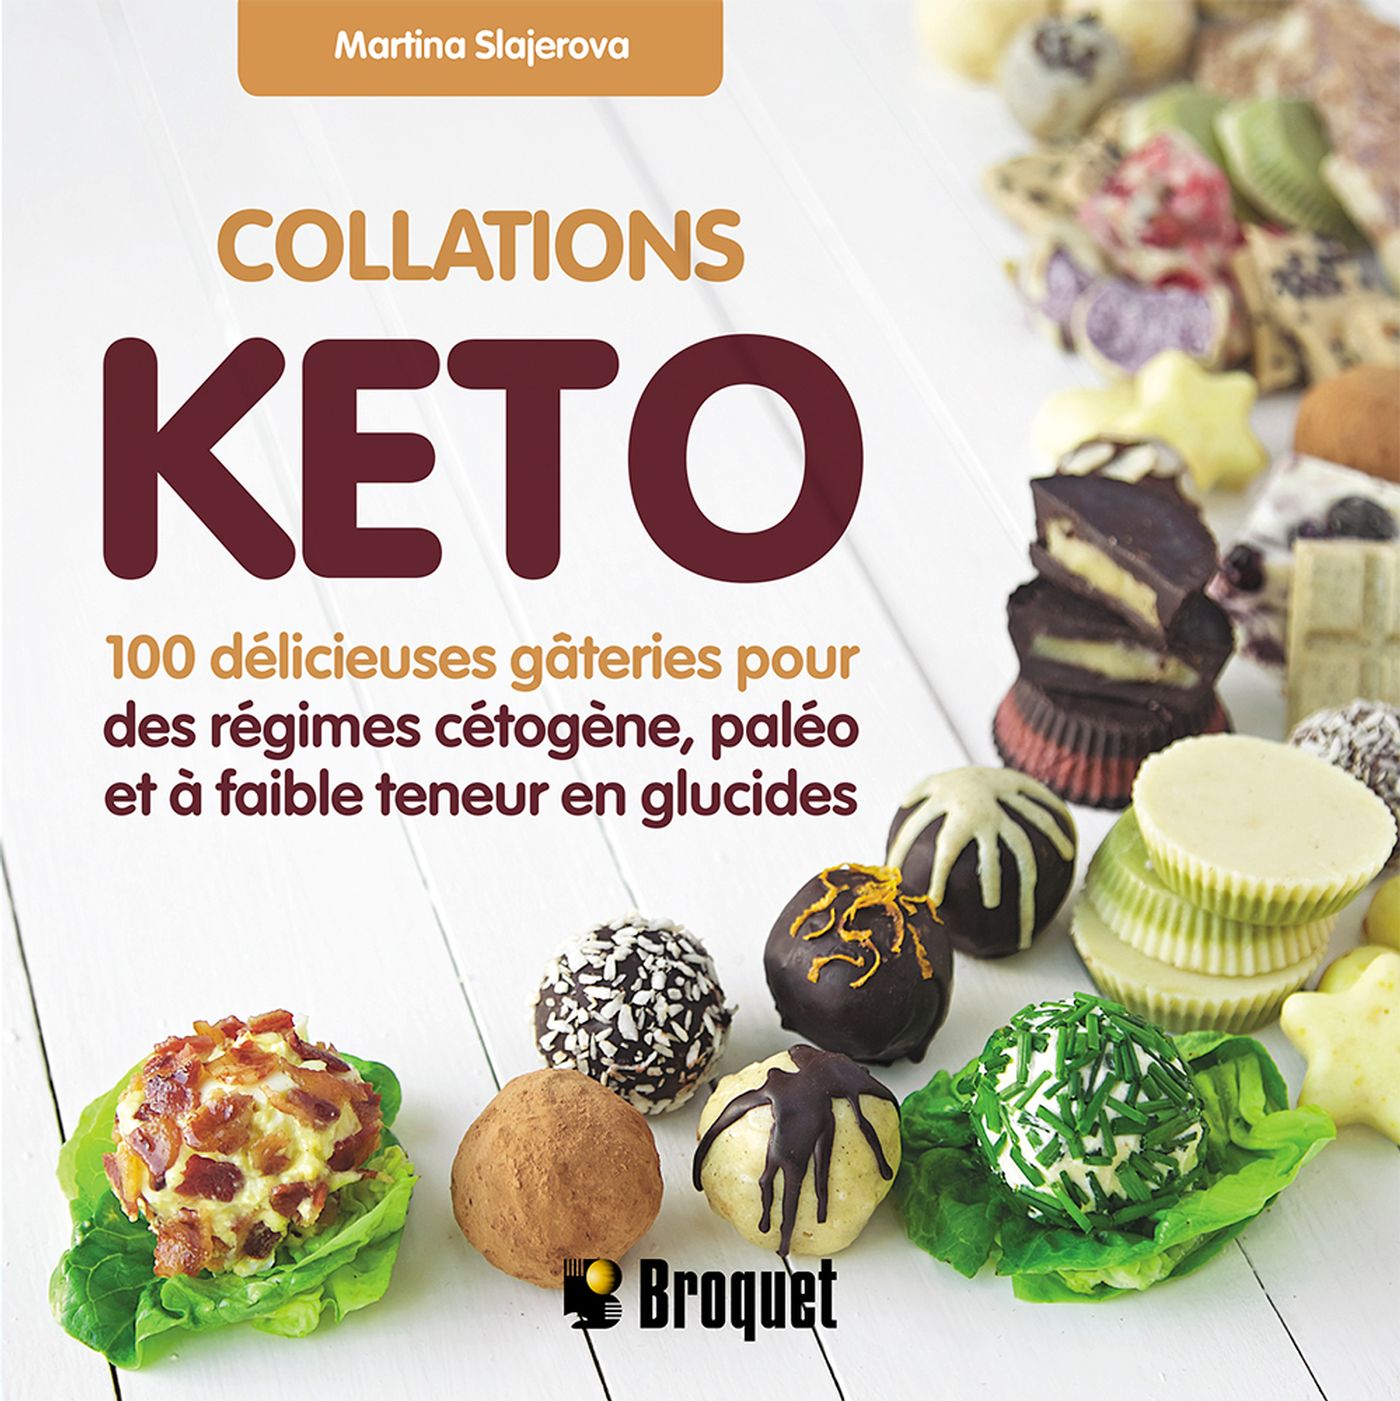 Collations Keto : 100 délicieuses gâteries pour des régimes céto - Martina Slajerova